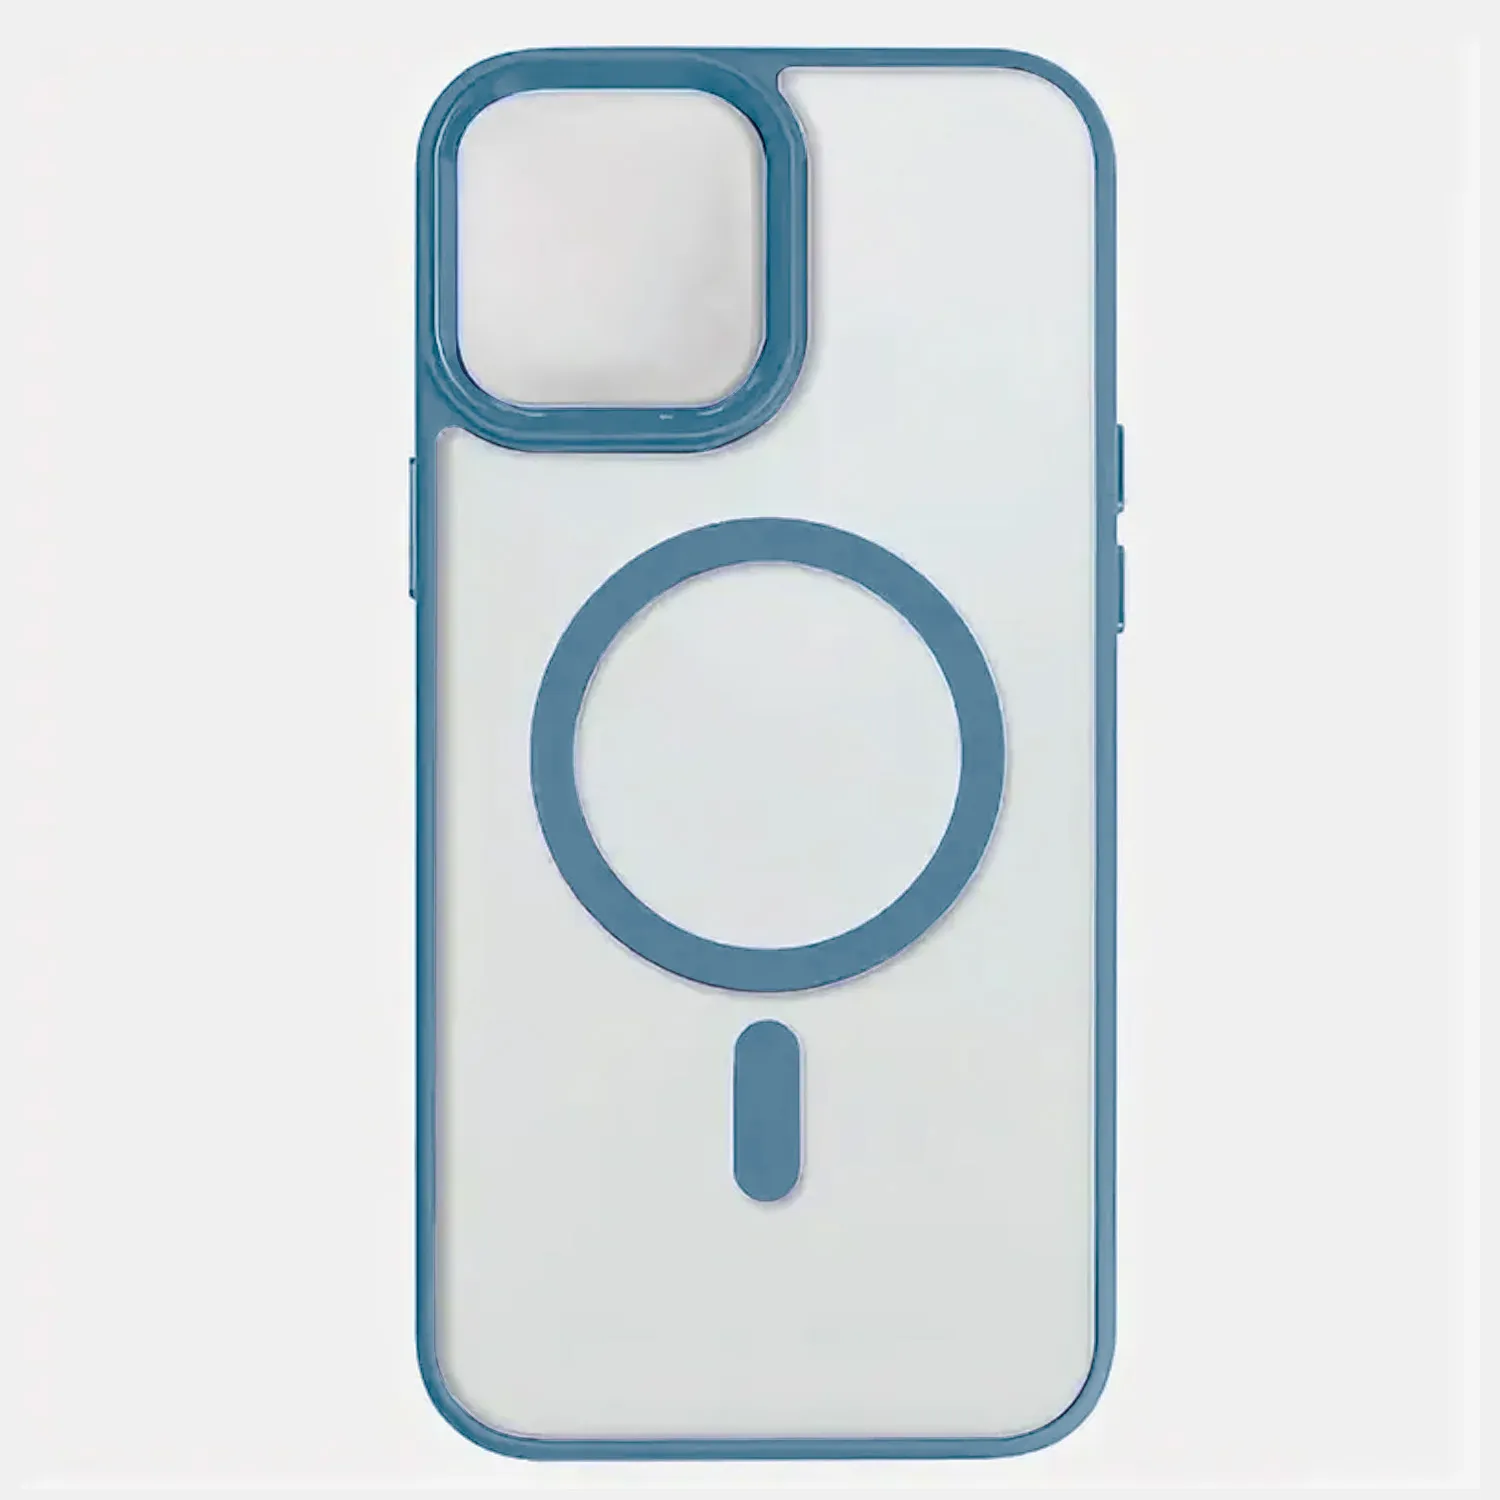 Чехол прозрачный для Apple iPhone 14, iPhone 13 с MagSafe (голубой)